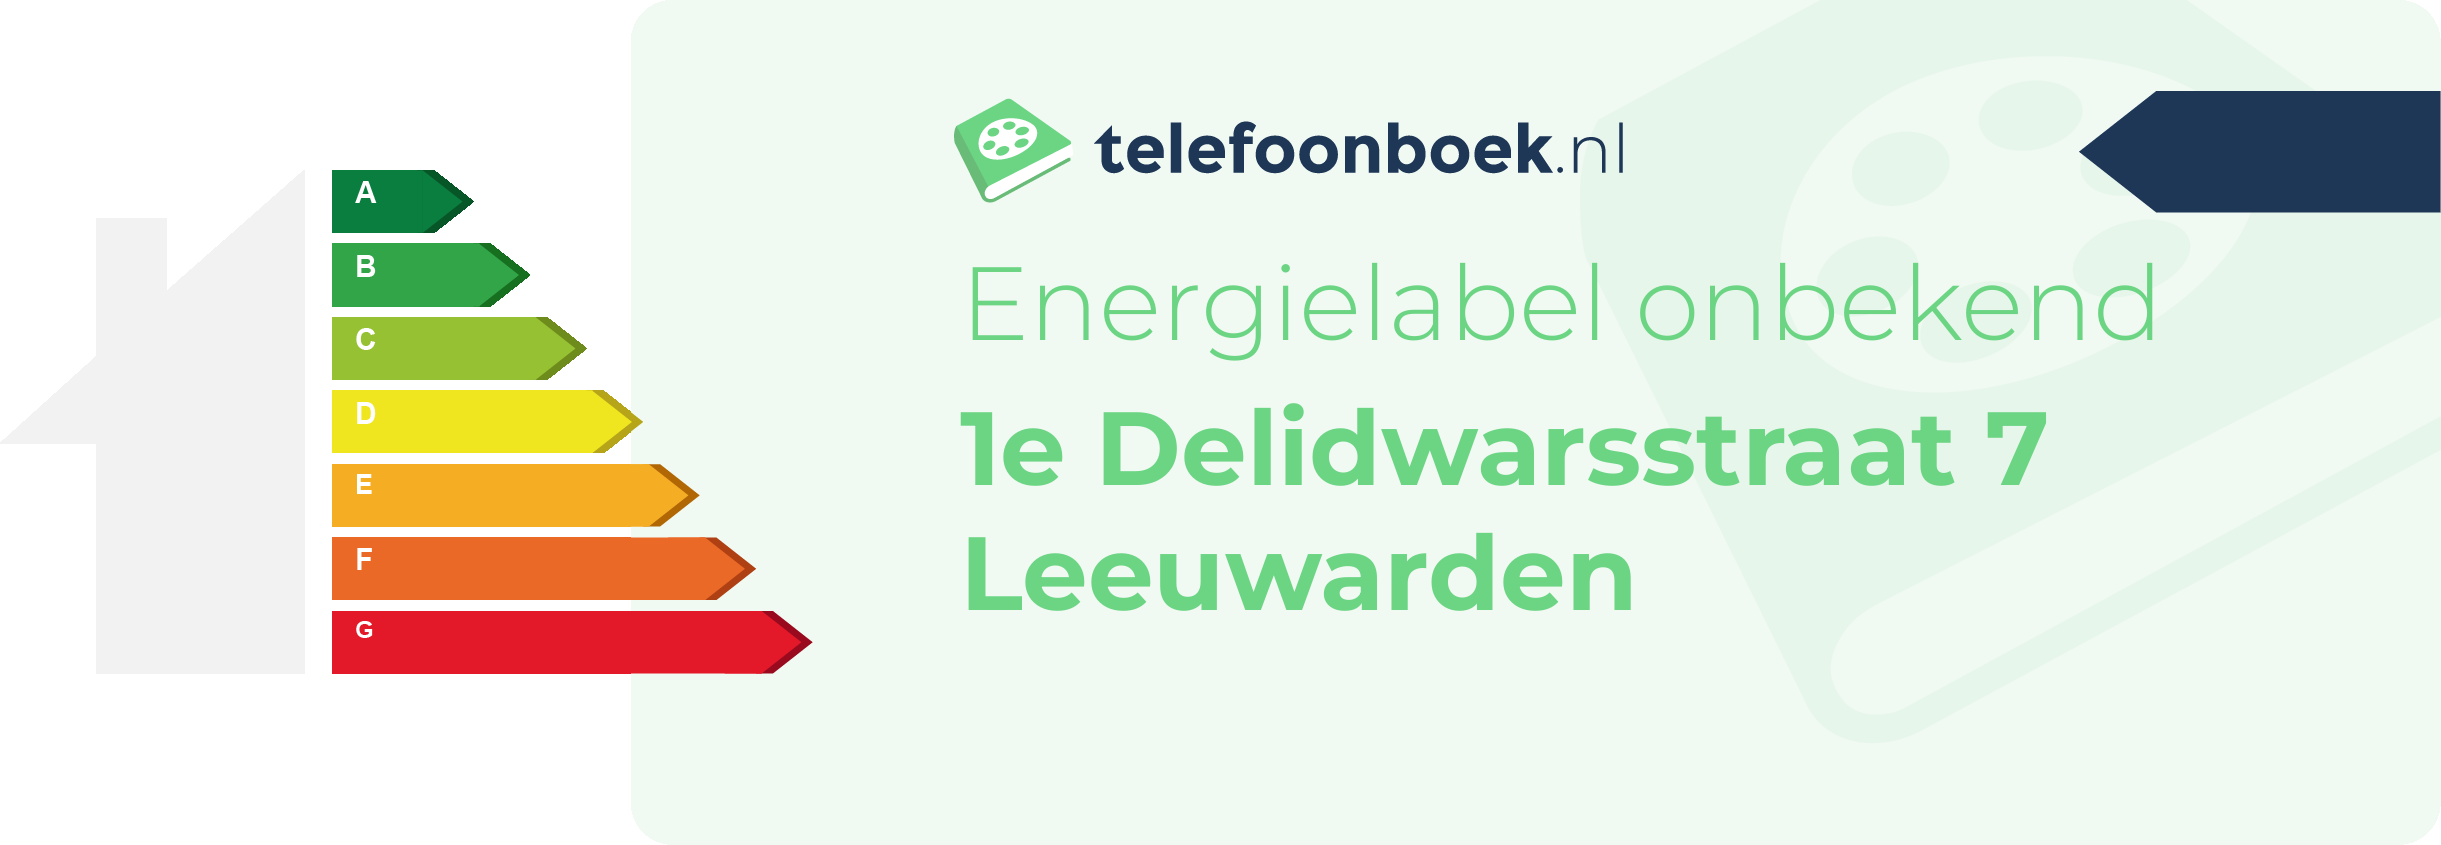 Energielabel 1e Delidwarsstraat 7 Leeuwarden